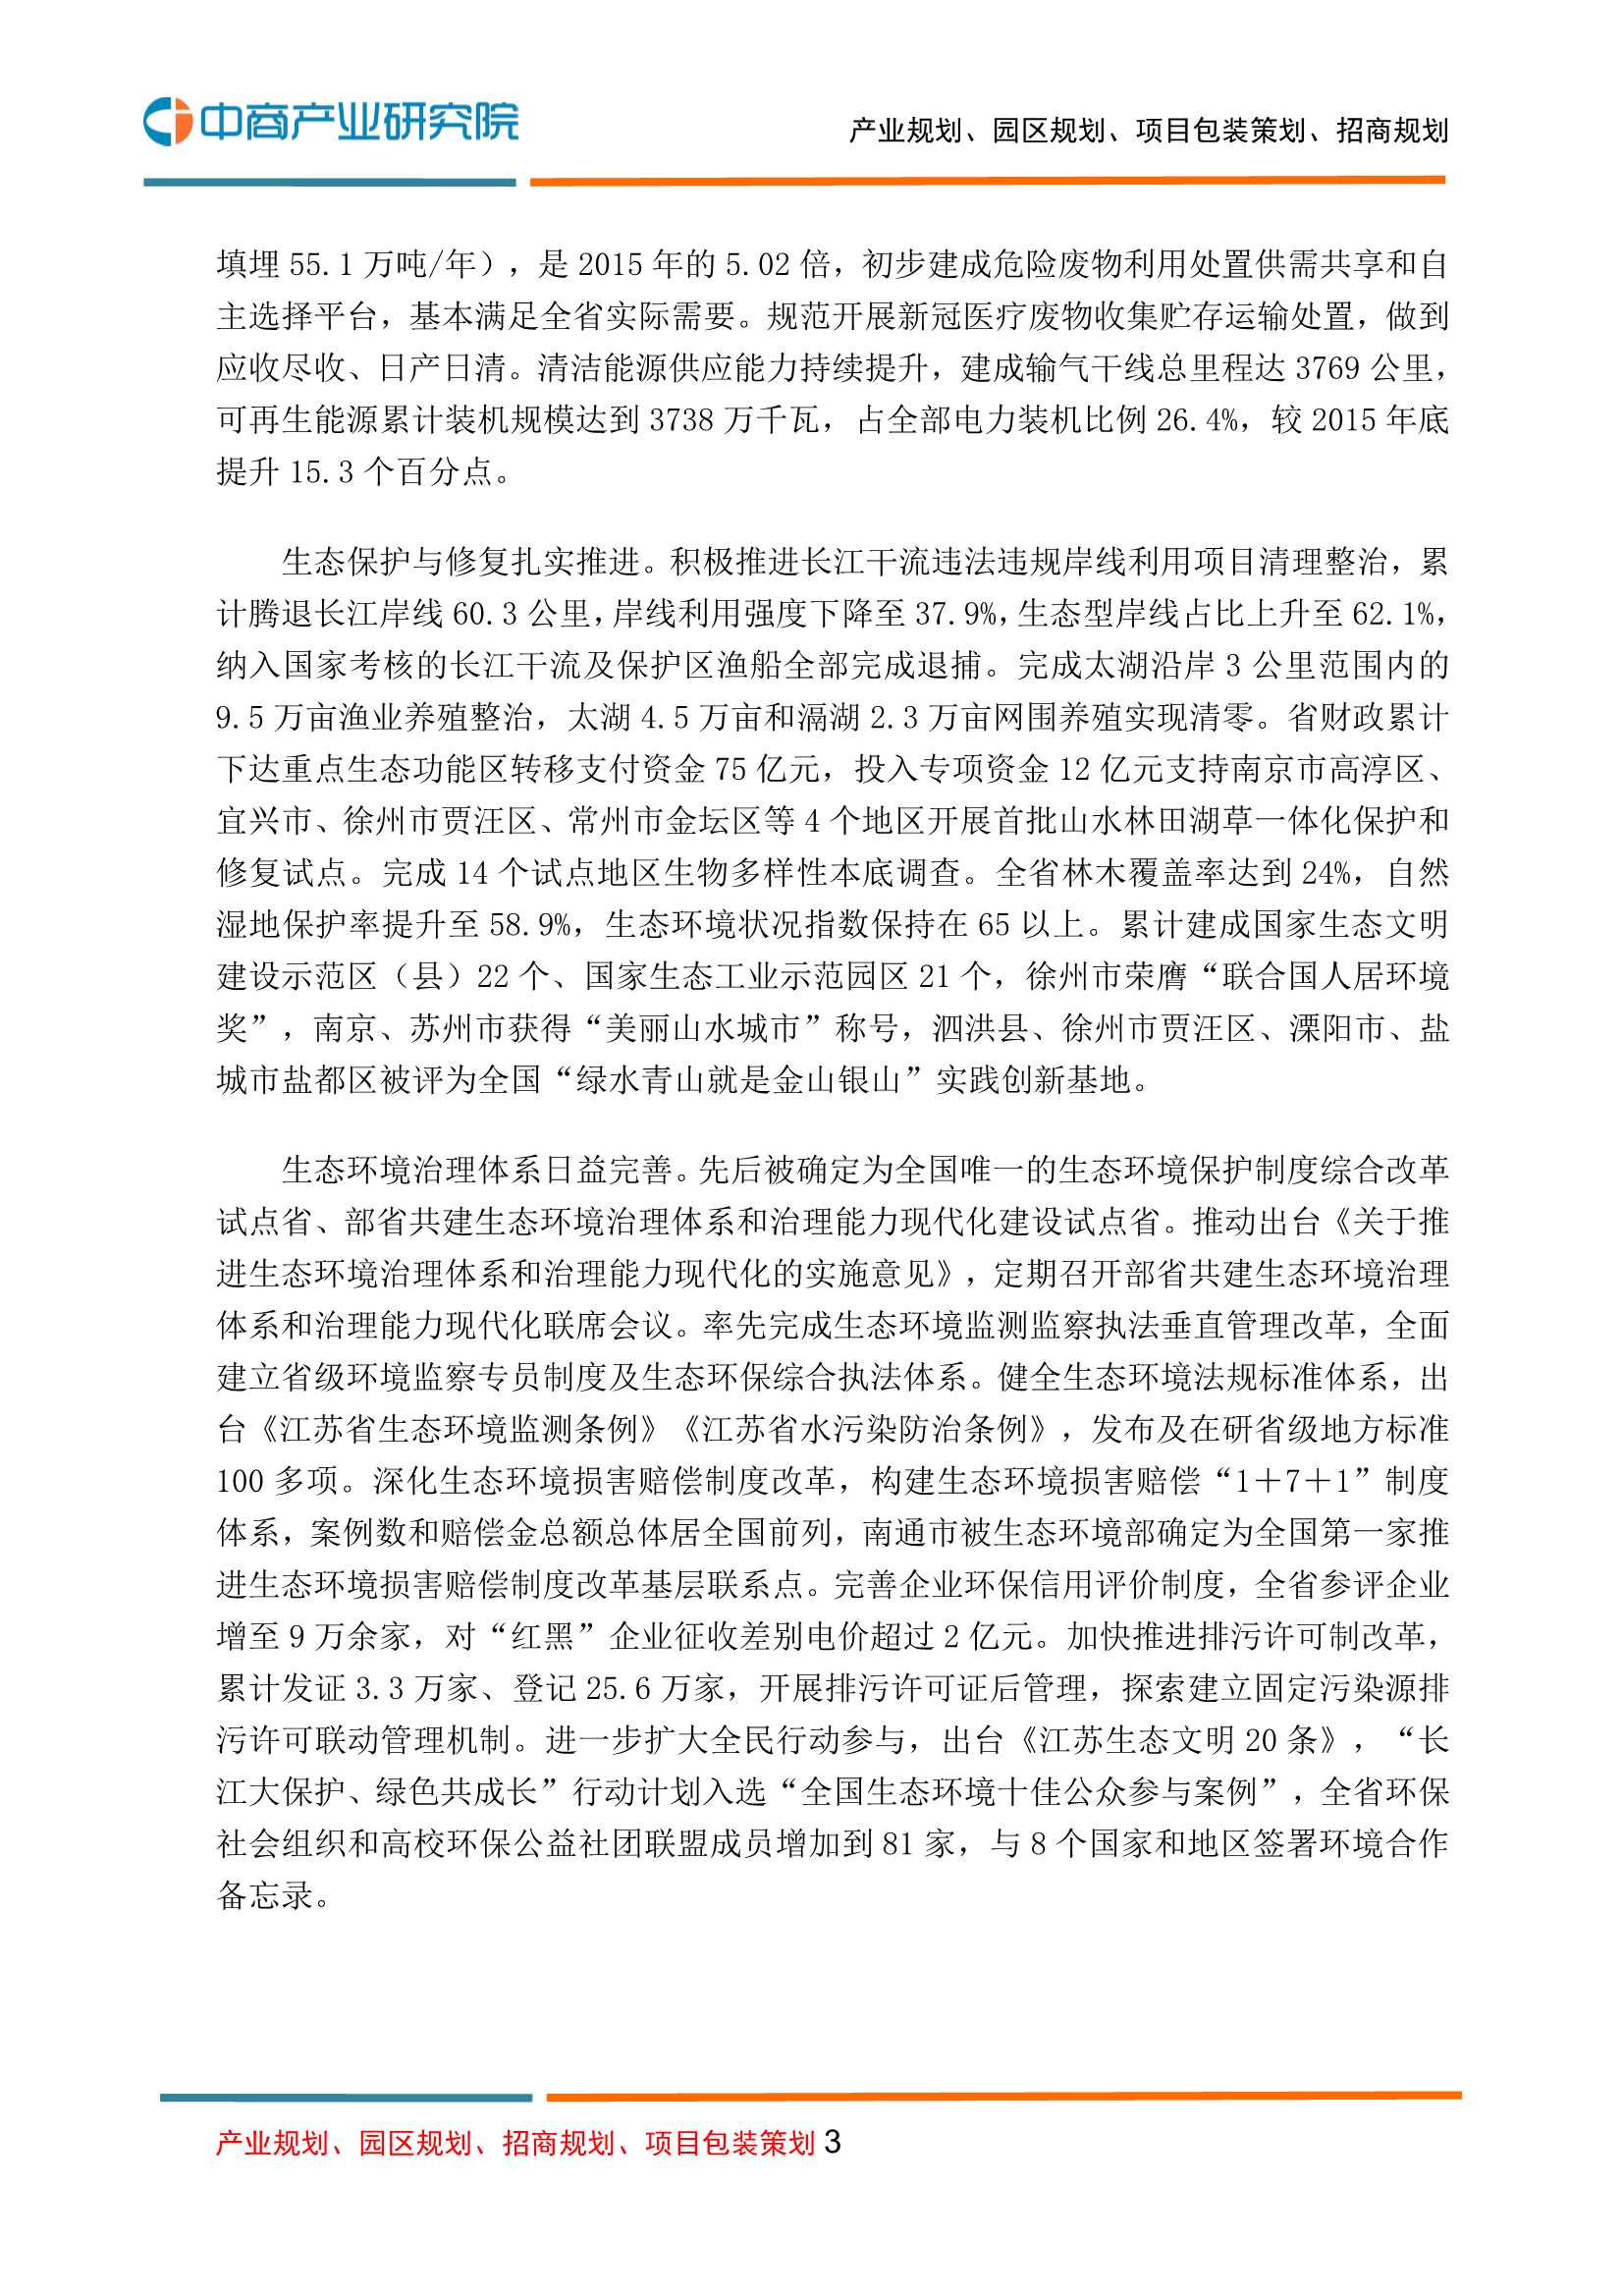 中商产业研究院-江苏省“十四五”生态环境保护规划-2021.12-47页